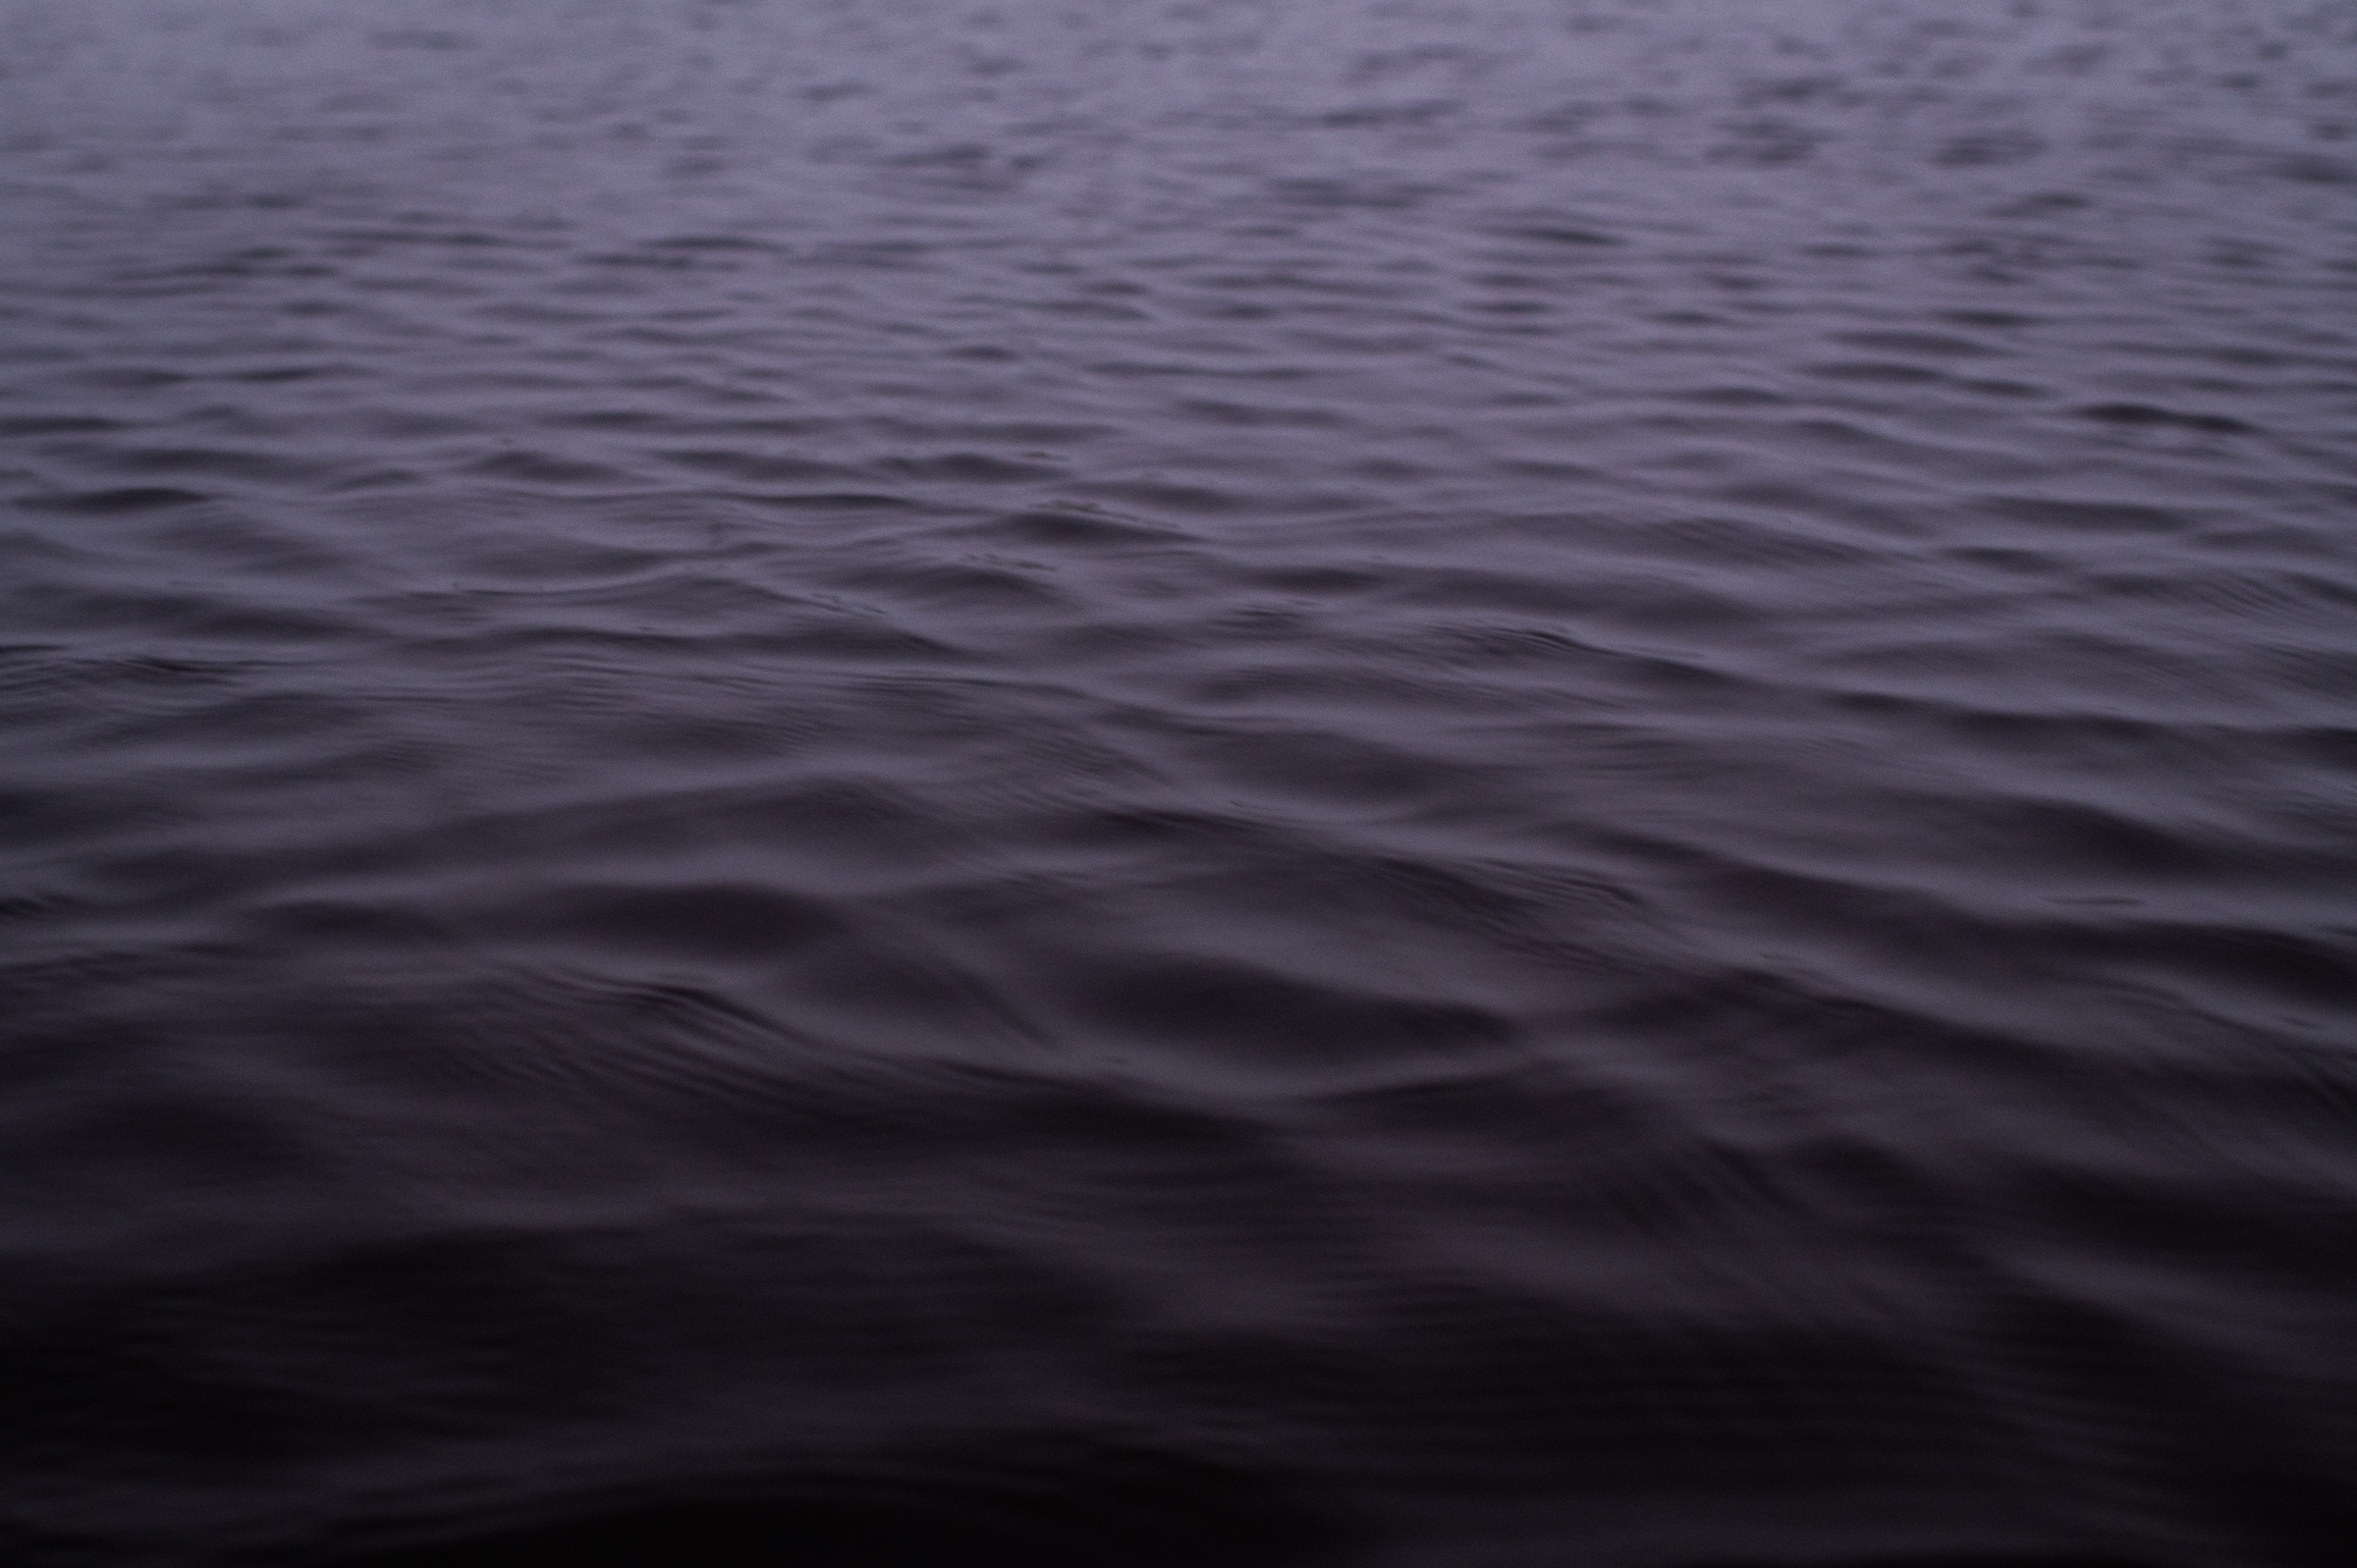 Slight ripples on open water